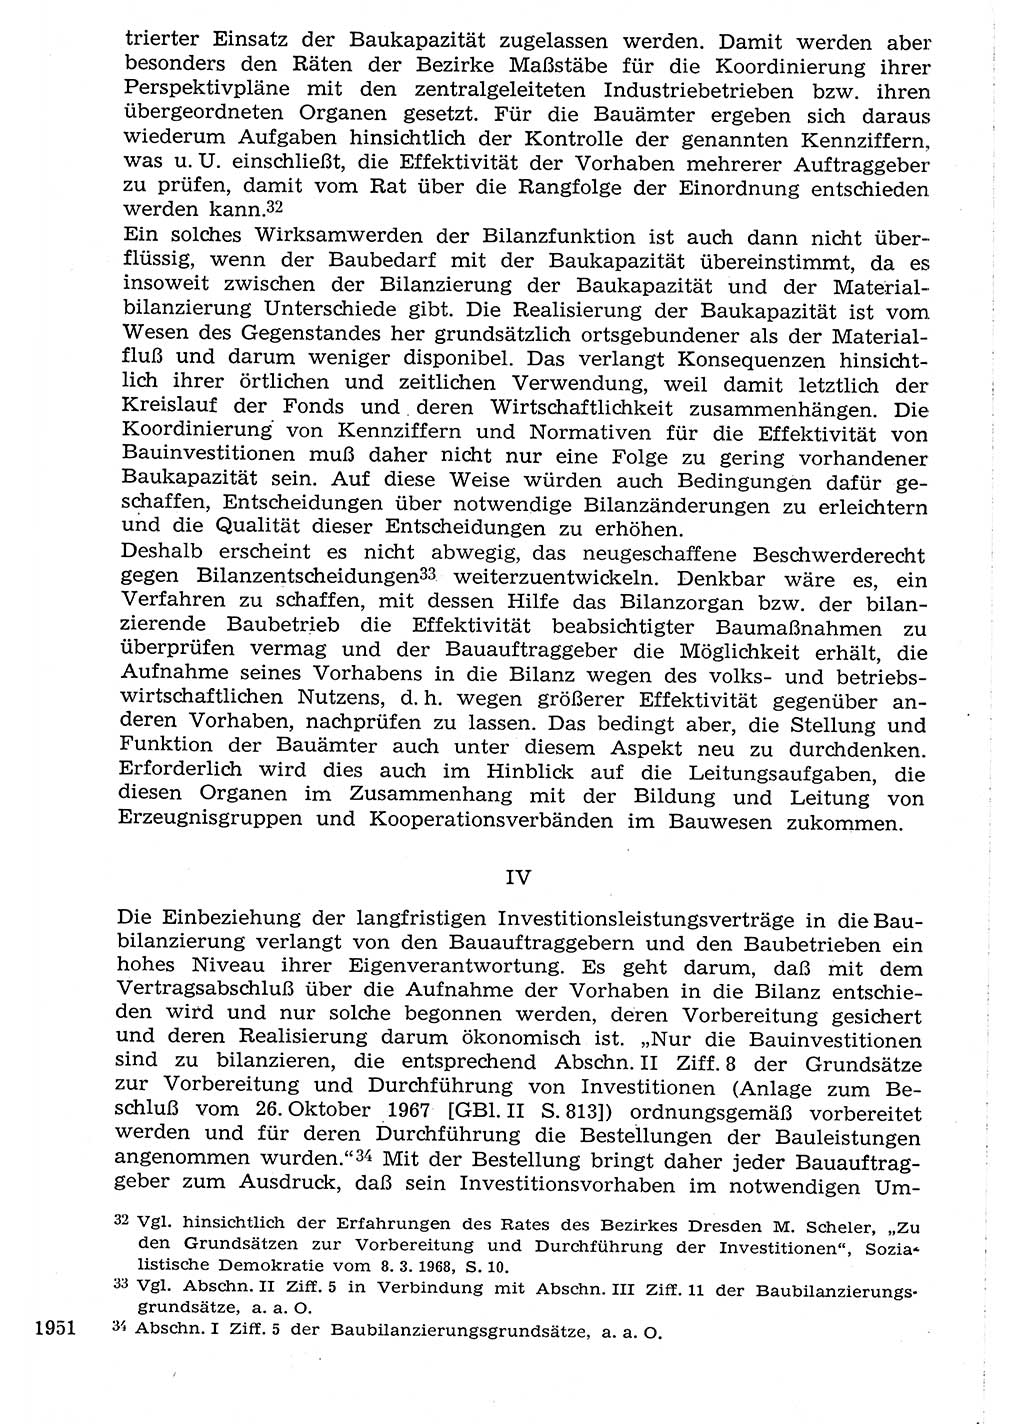 Staat und Recht (StuR), 17. Jahrgang [Deutsche Demokratische Republik (DDR)] 1968, Seite 1951 (StuR DDR 1968, S. 1951)